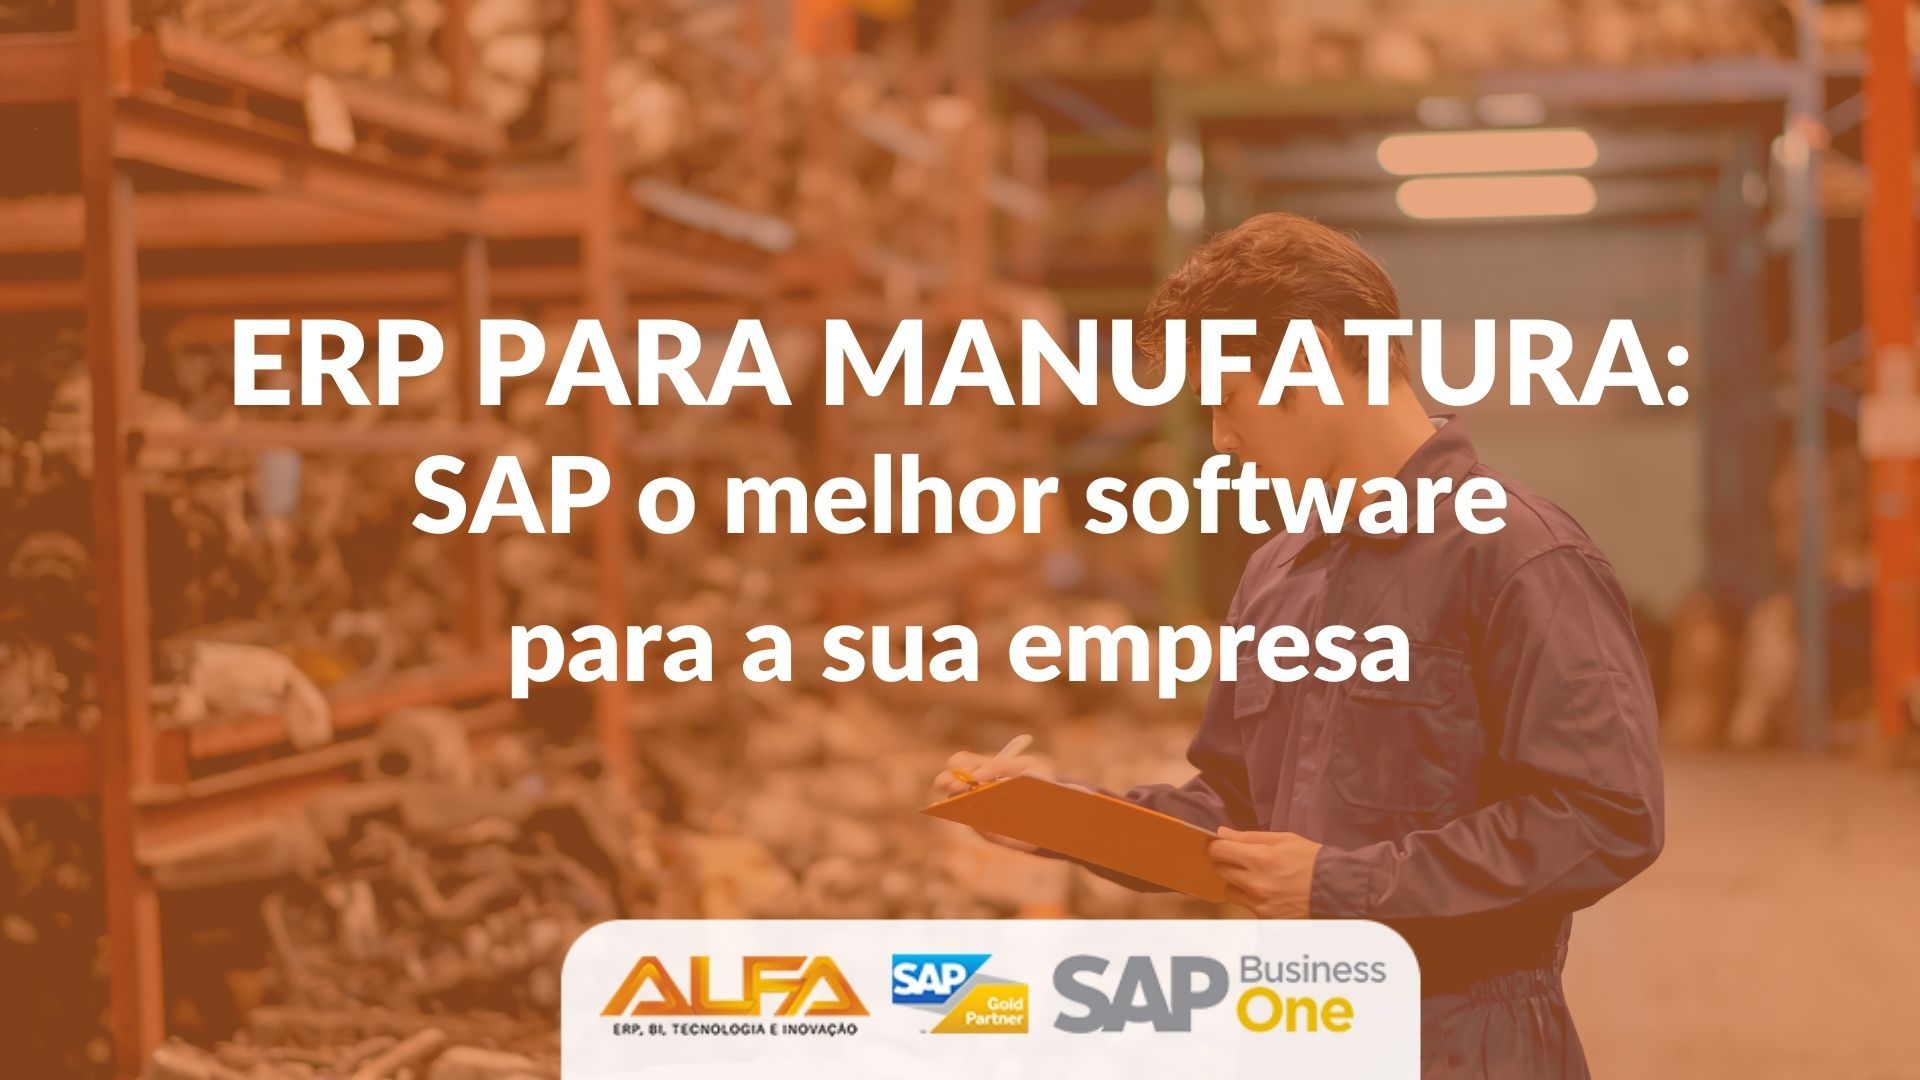 ERP para Manufatura SAP o melhor software para a sua empresa ERP para Manufatura SAP o melhor software para a sua empresa ERP para Manufatura SAP o melhor software para a sua empresa ERP para Manufatura SAP o melhor software para a sua empresa